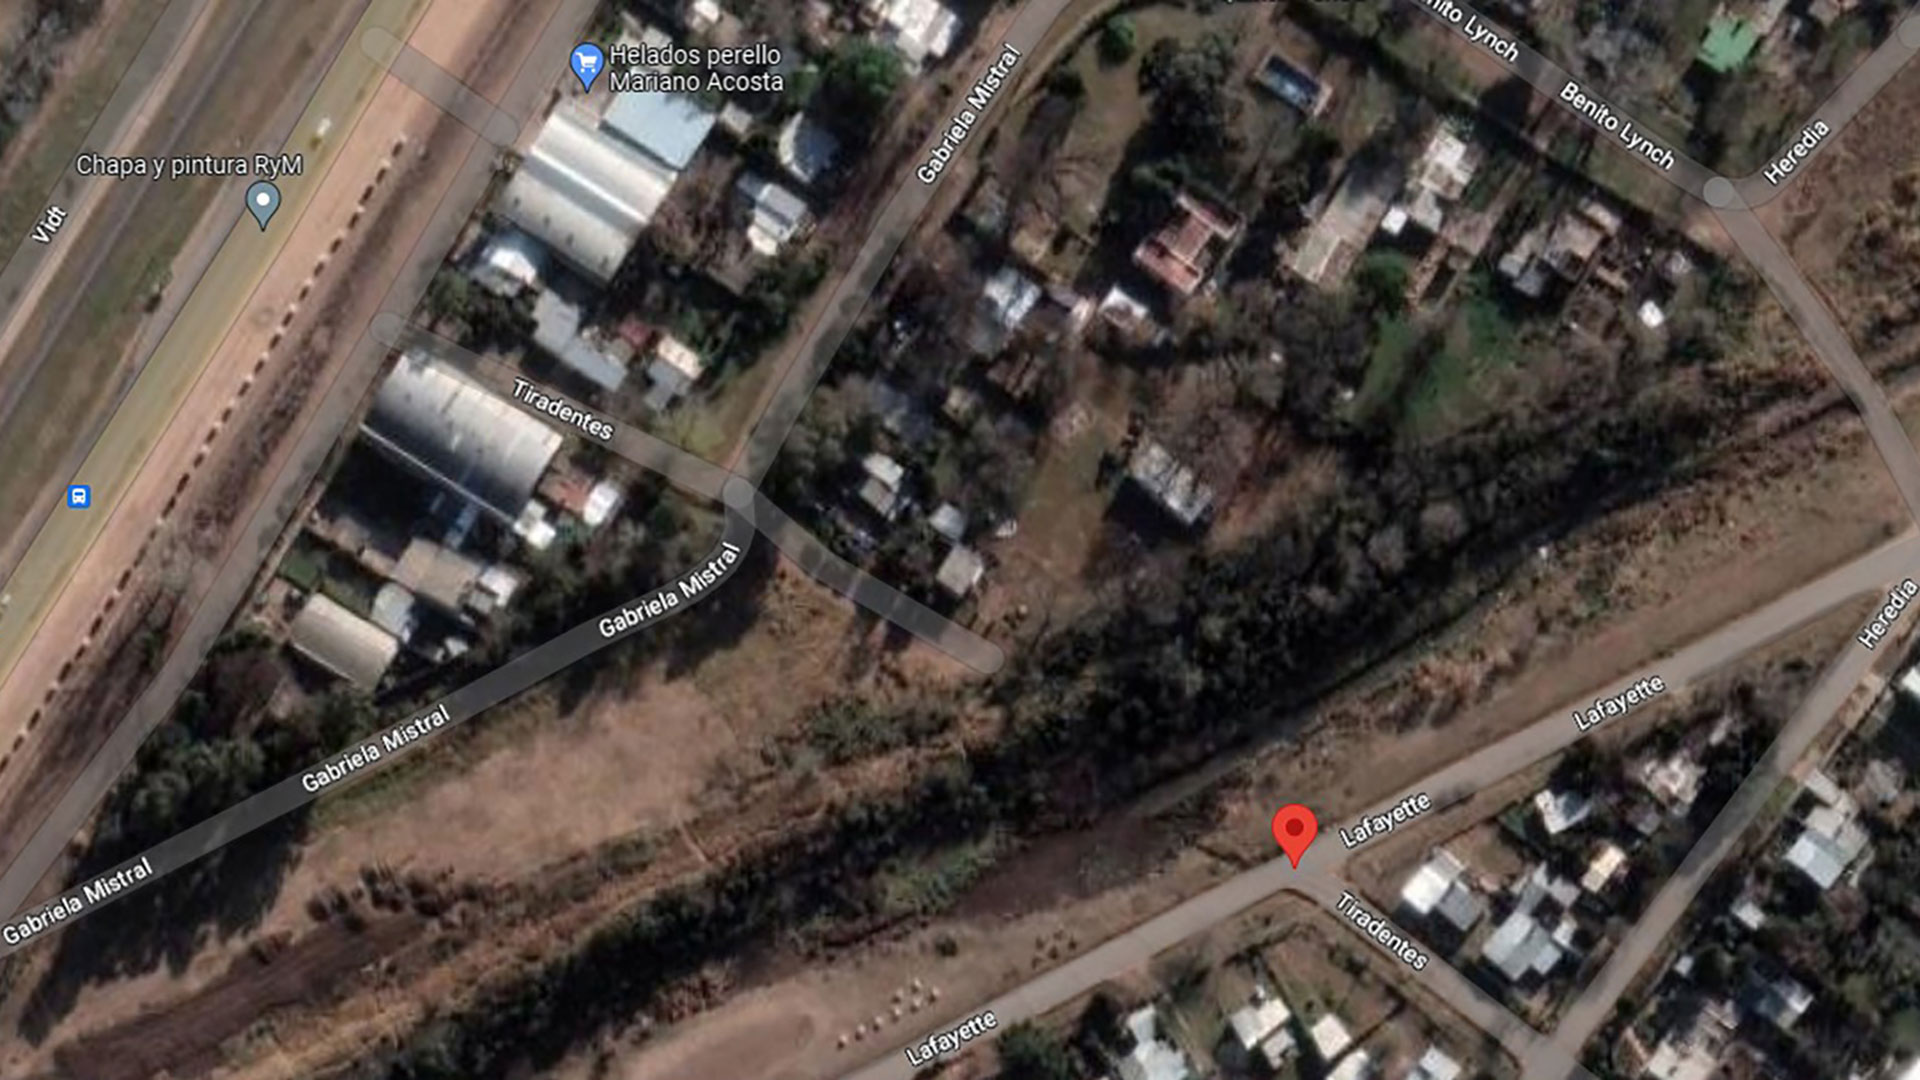 Imagen satelital del descampado donde hallaron el cuerpo